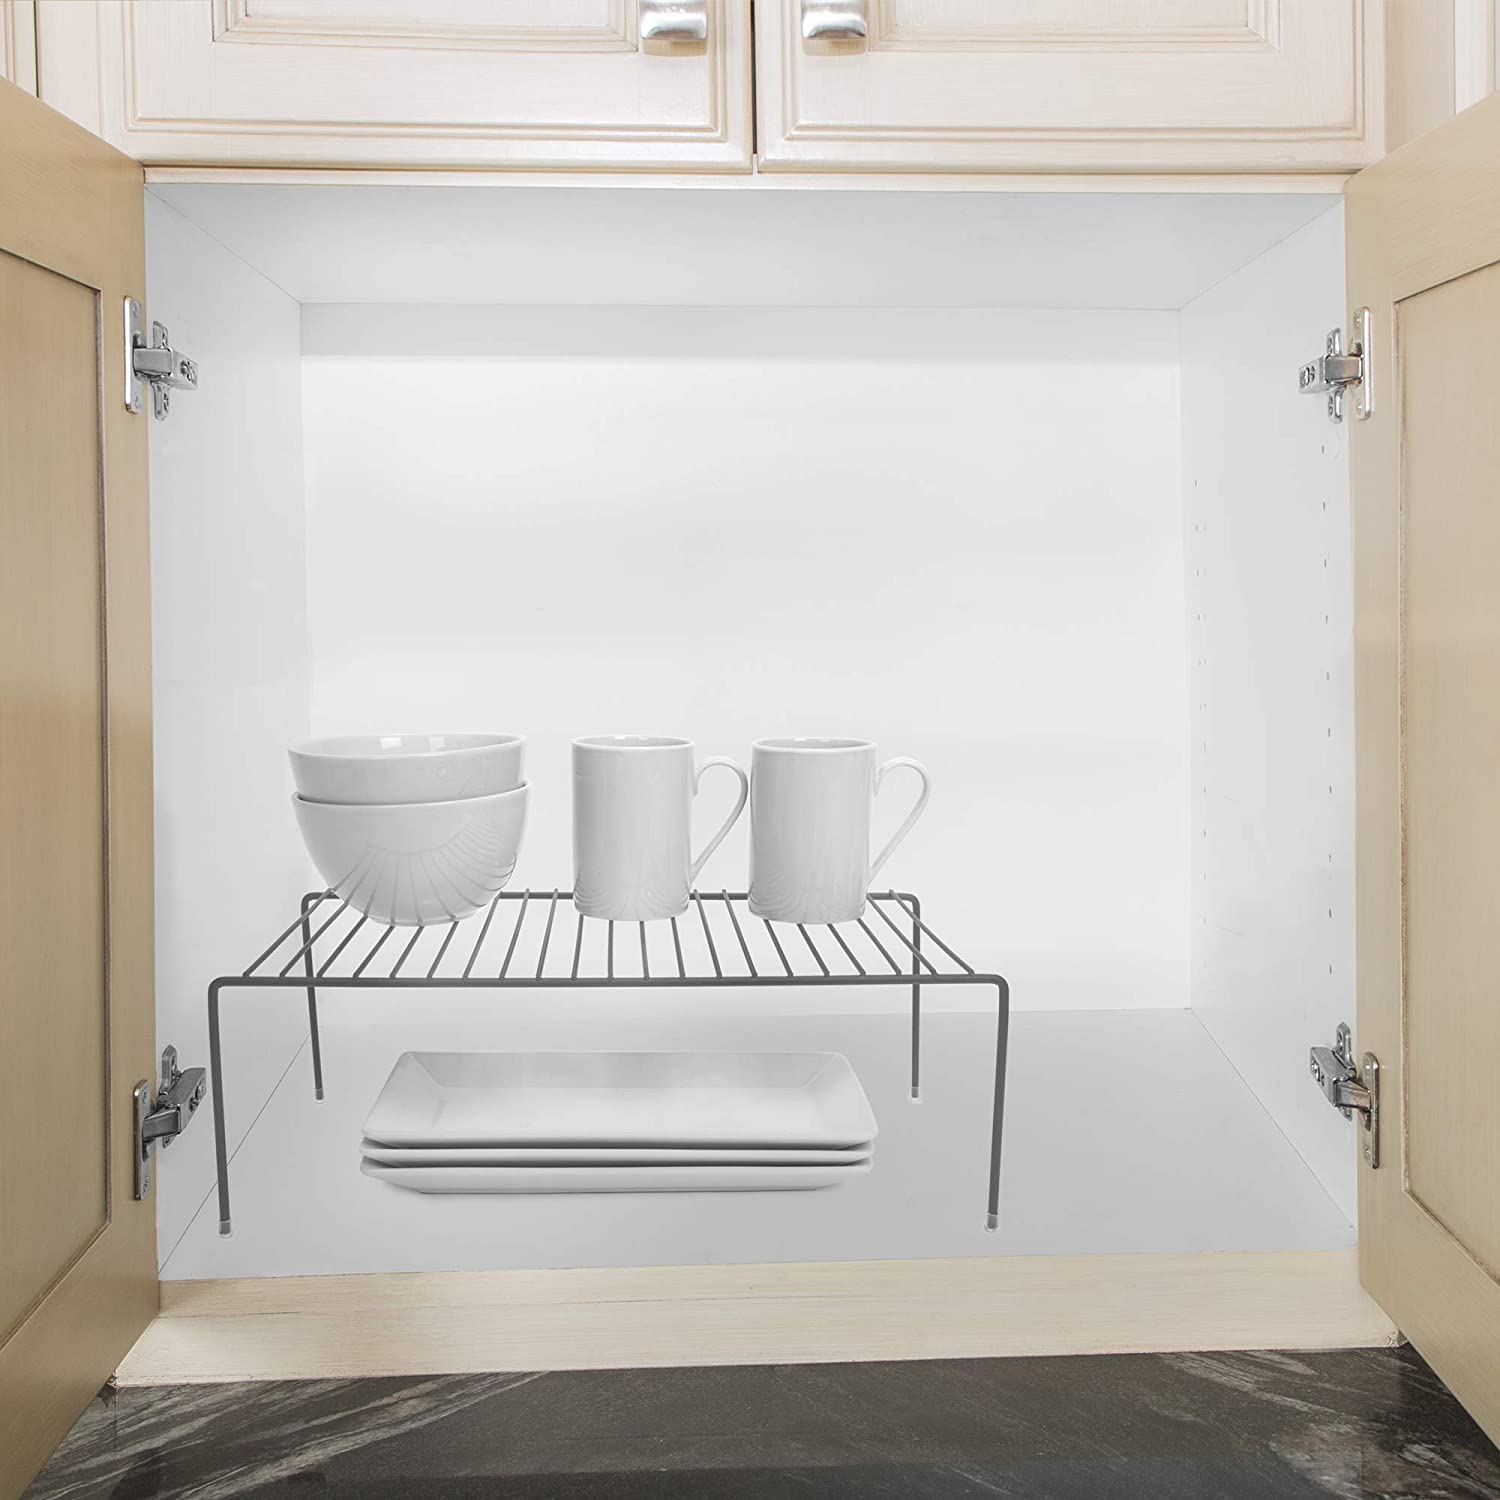 https://www.shopsmartdesign.com/cdn/shop/products/large-cabinet-storage-shelf-rack-smart-design-kitchen-8233638a24-incrementing-number-542966.jpg?v=1679341232